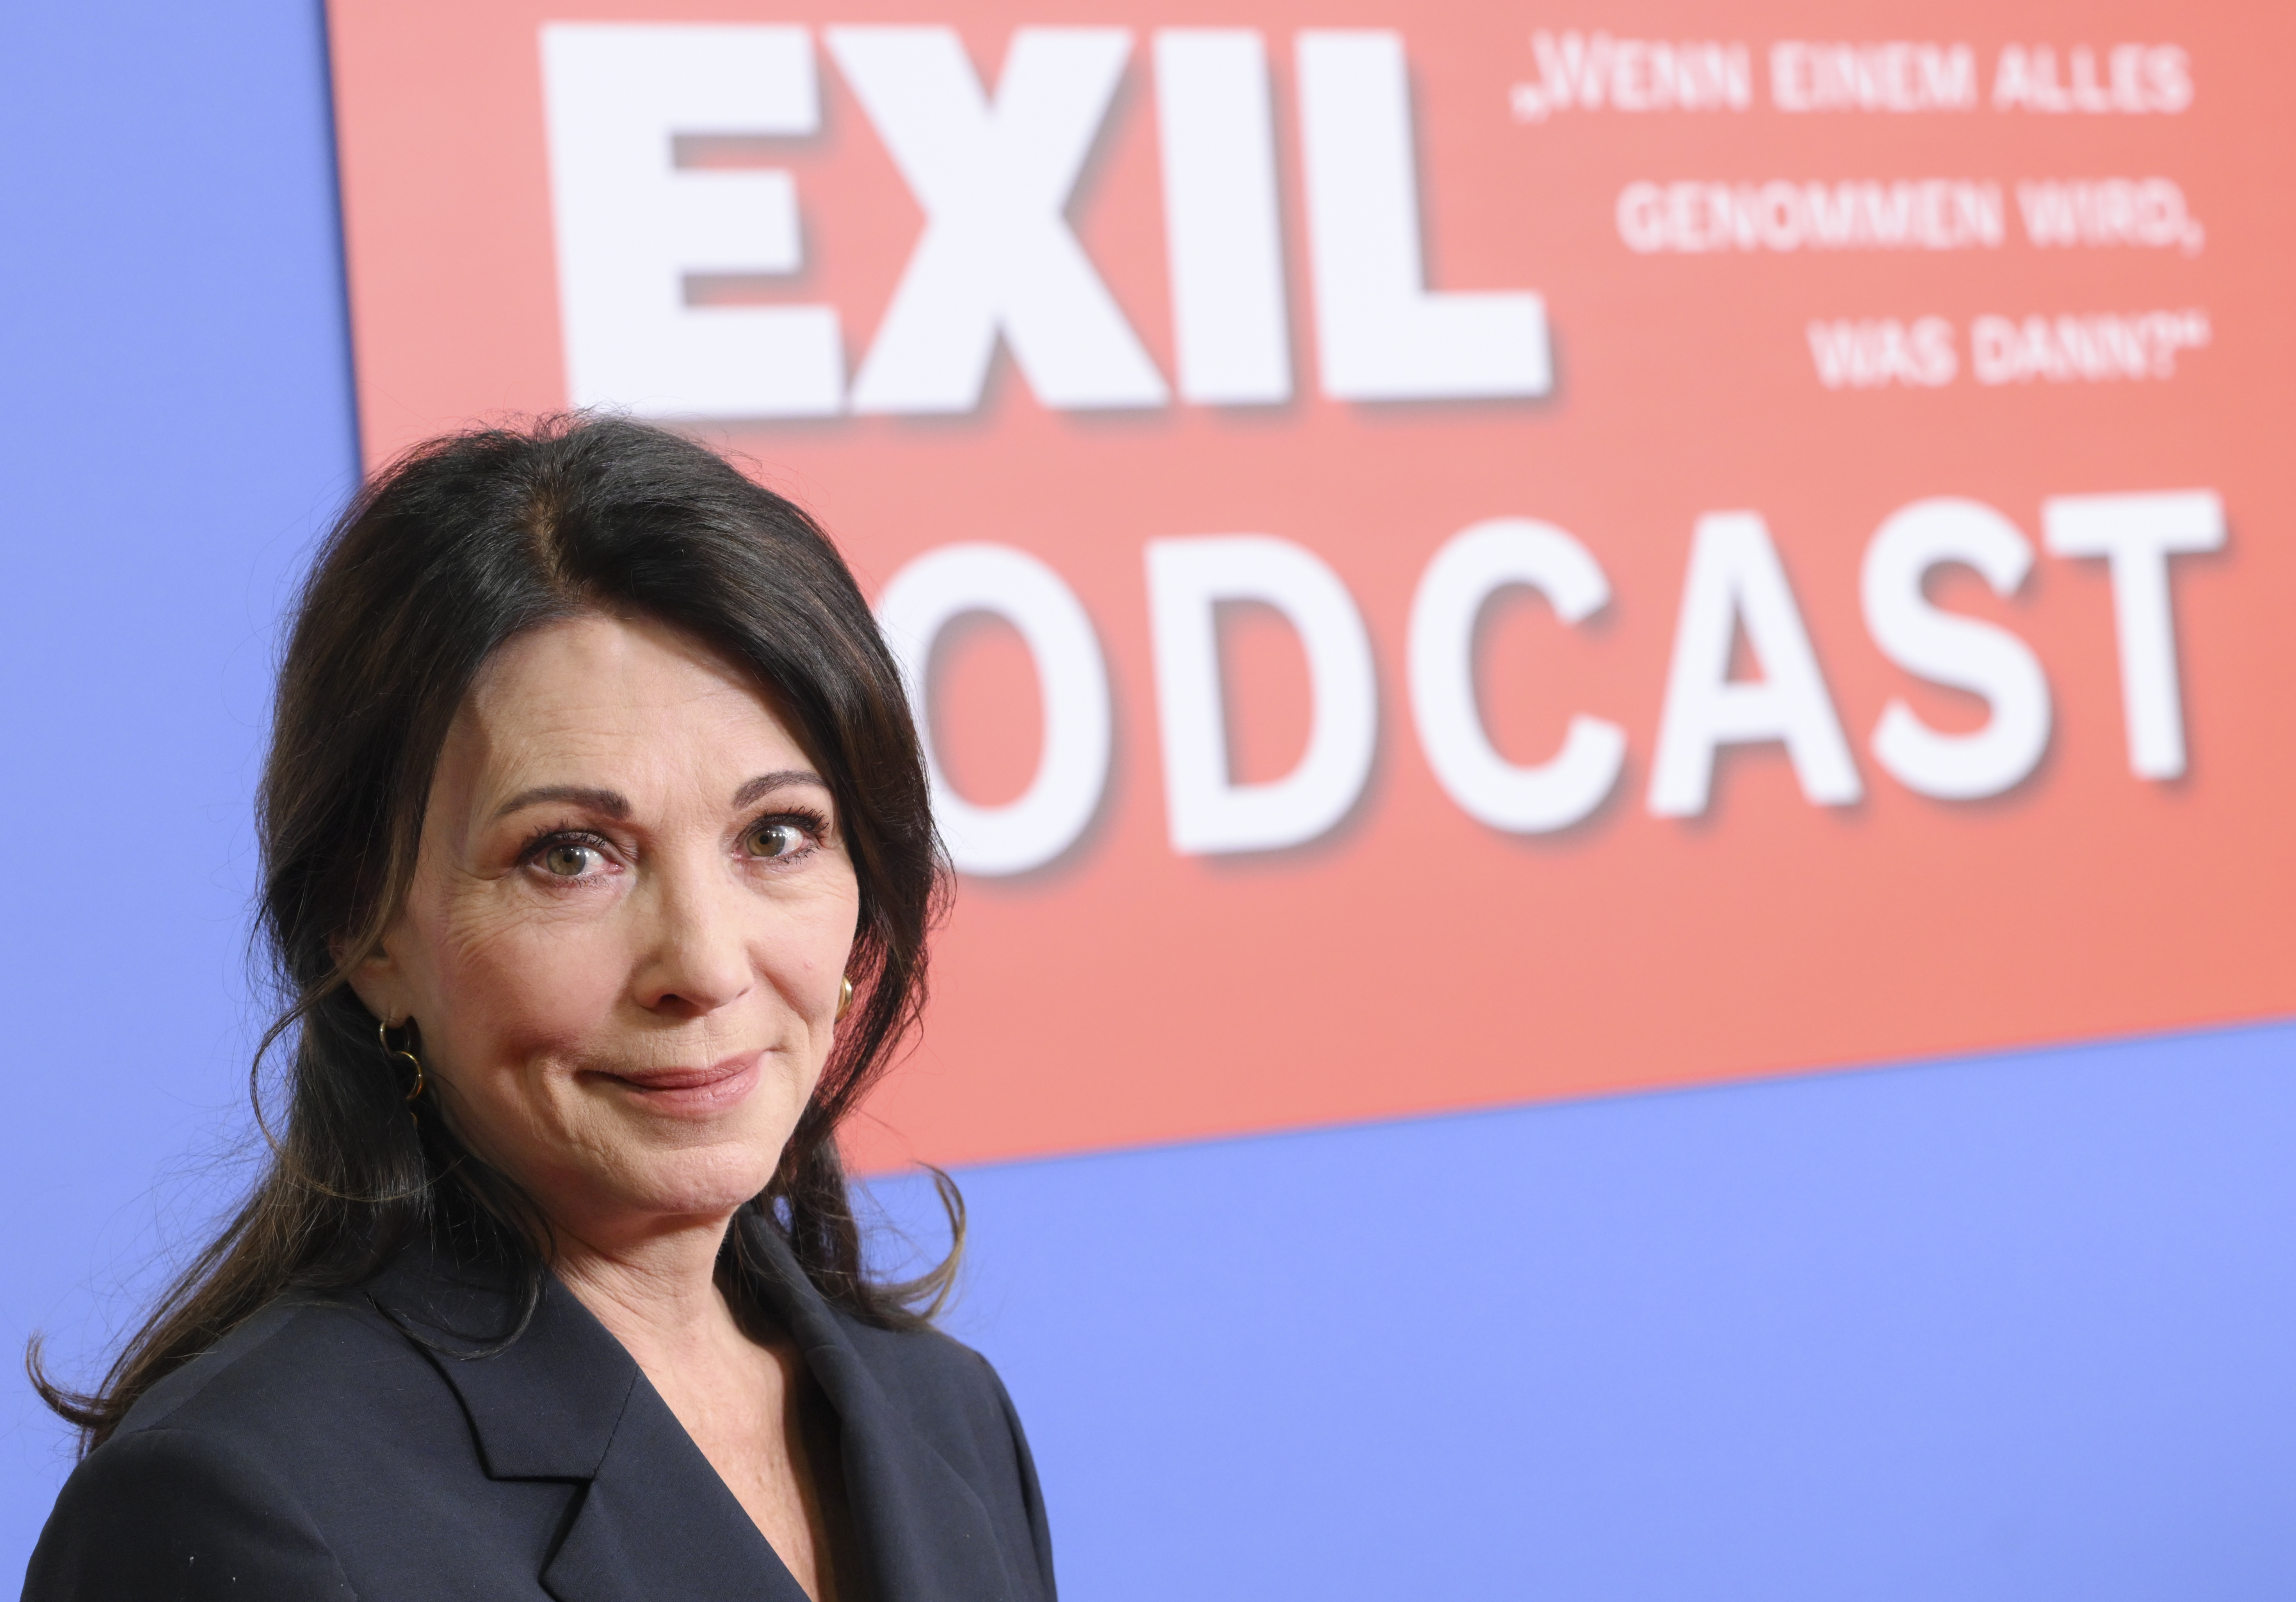 Schauspielerin Iris Berben stellt auf einer Veranstaltung der Bundeszentrale für politische Bildung den Exil-Podcast vor.